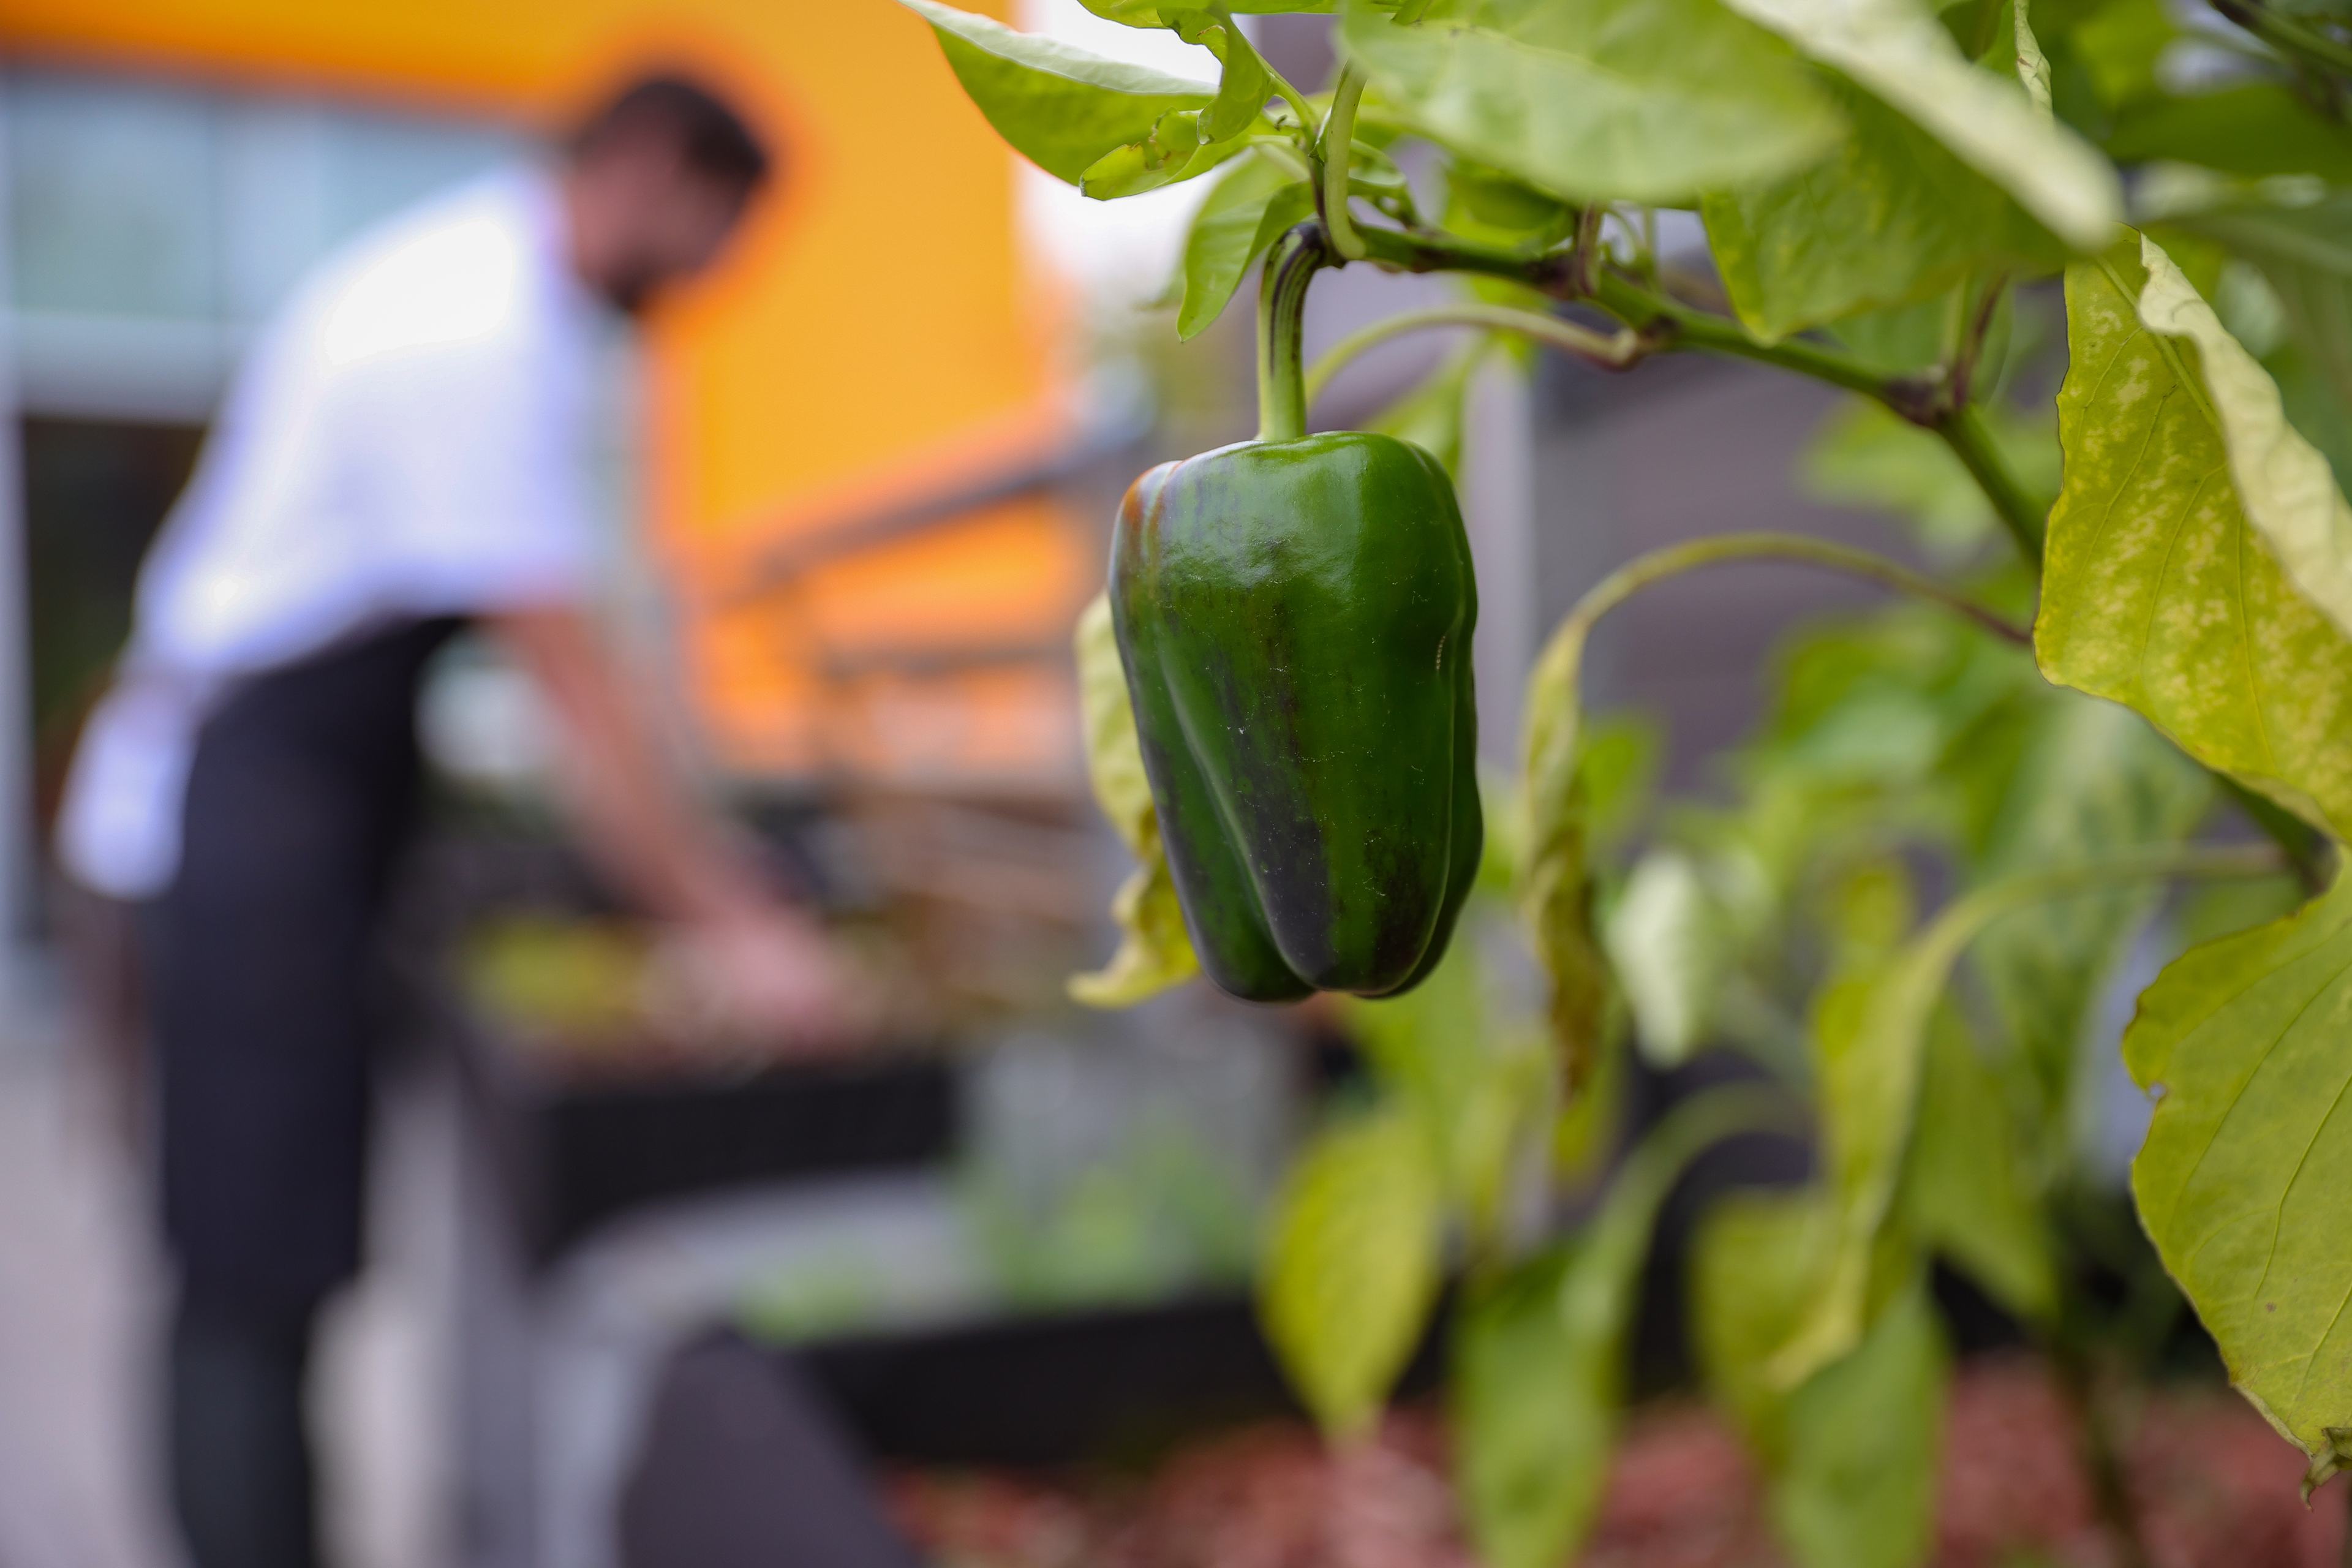 green pepper hanging in a garden